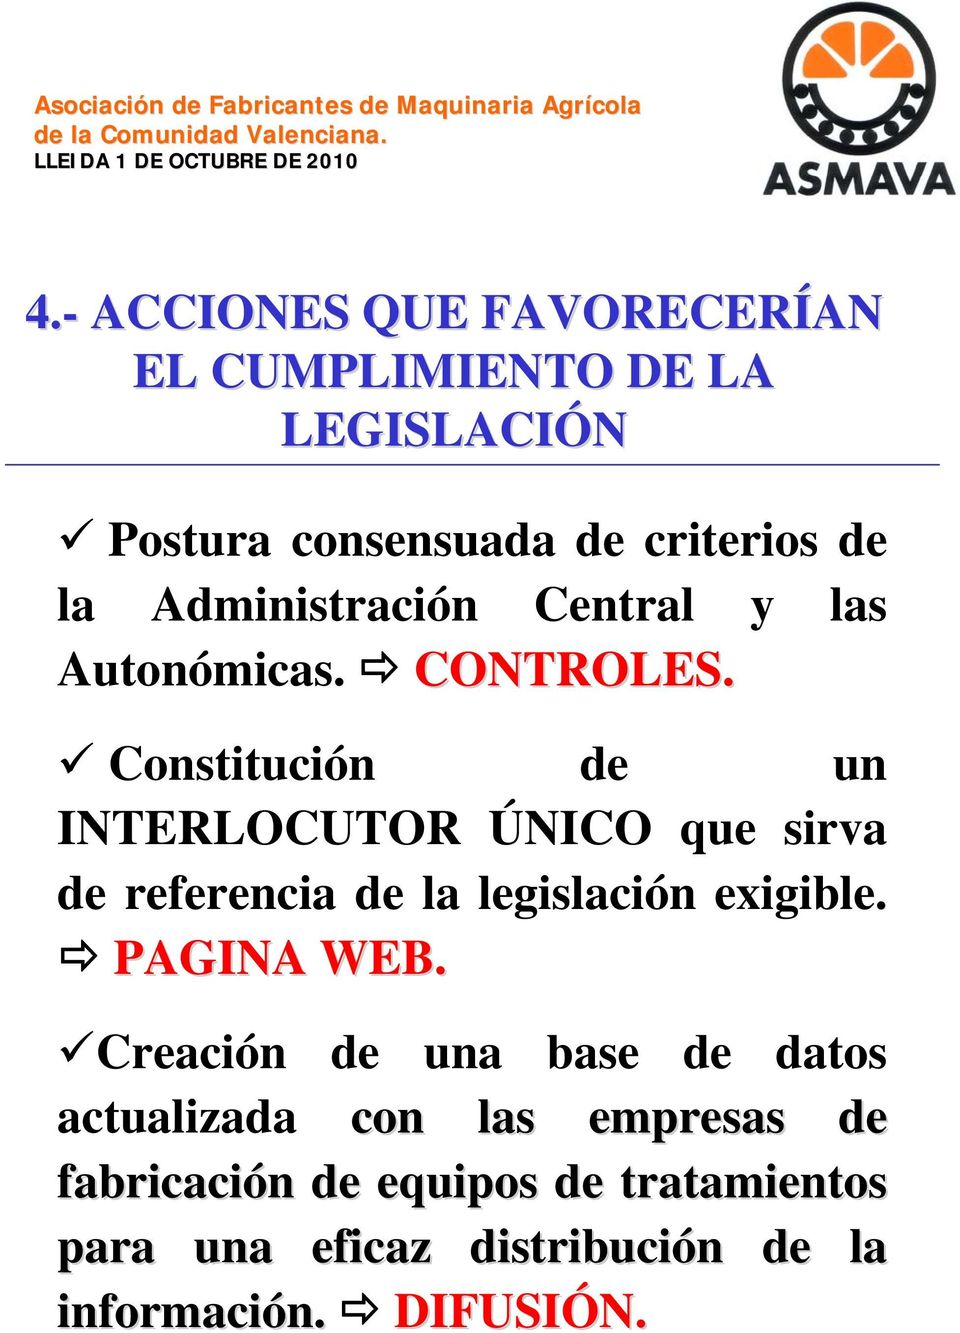 Constitución de un INTERLOCUTOR ÚNICO que sirva de referencia de la legislación exigible. PAGINA WEB.